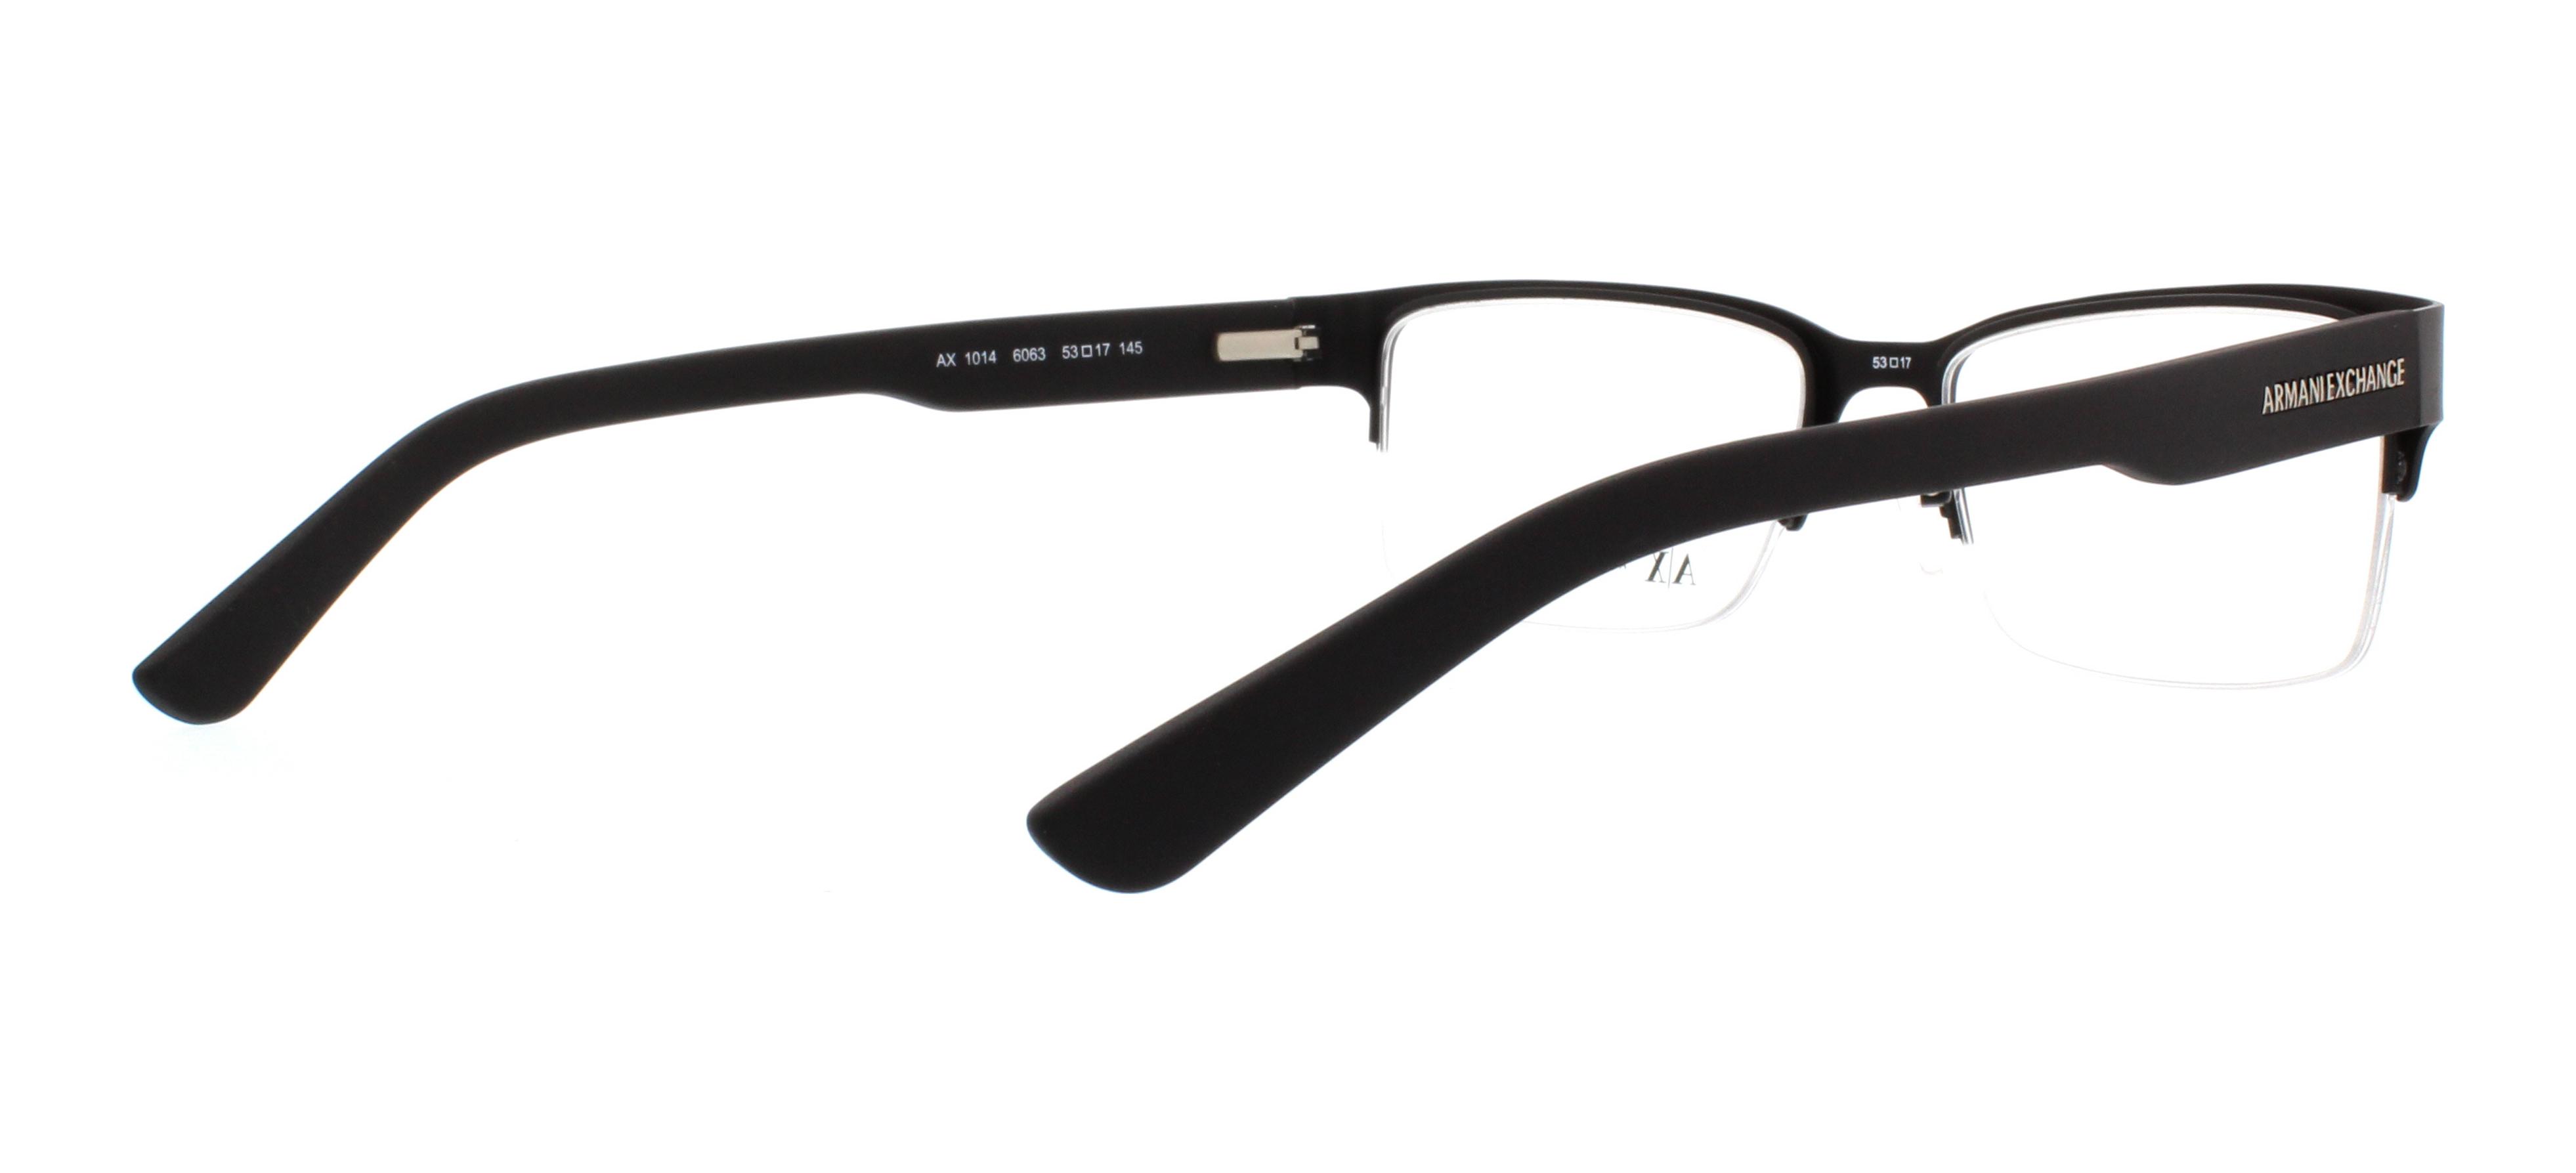 Designer Frames Outlet. Armani Exchange Eyeglasses AX1014